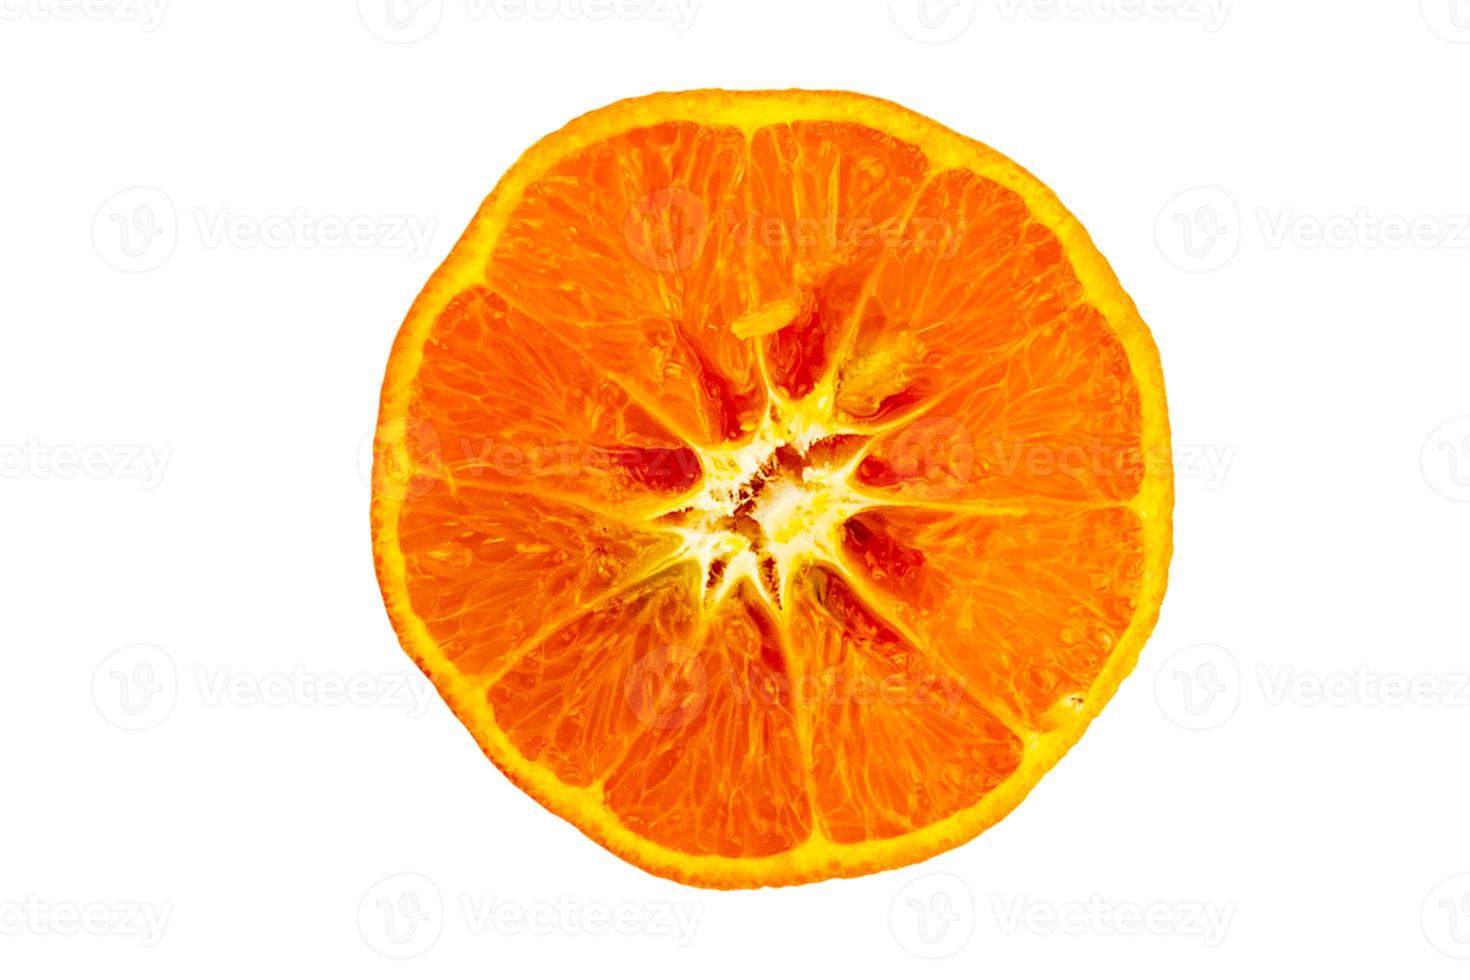 1308 Orange fruit slice isolated on a transparent background photo